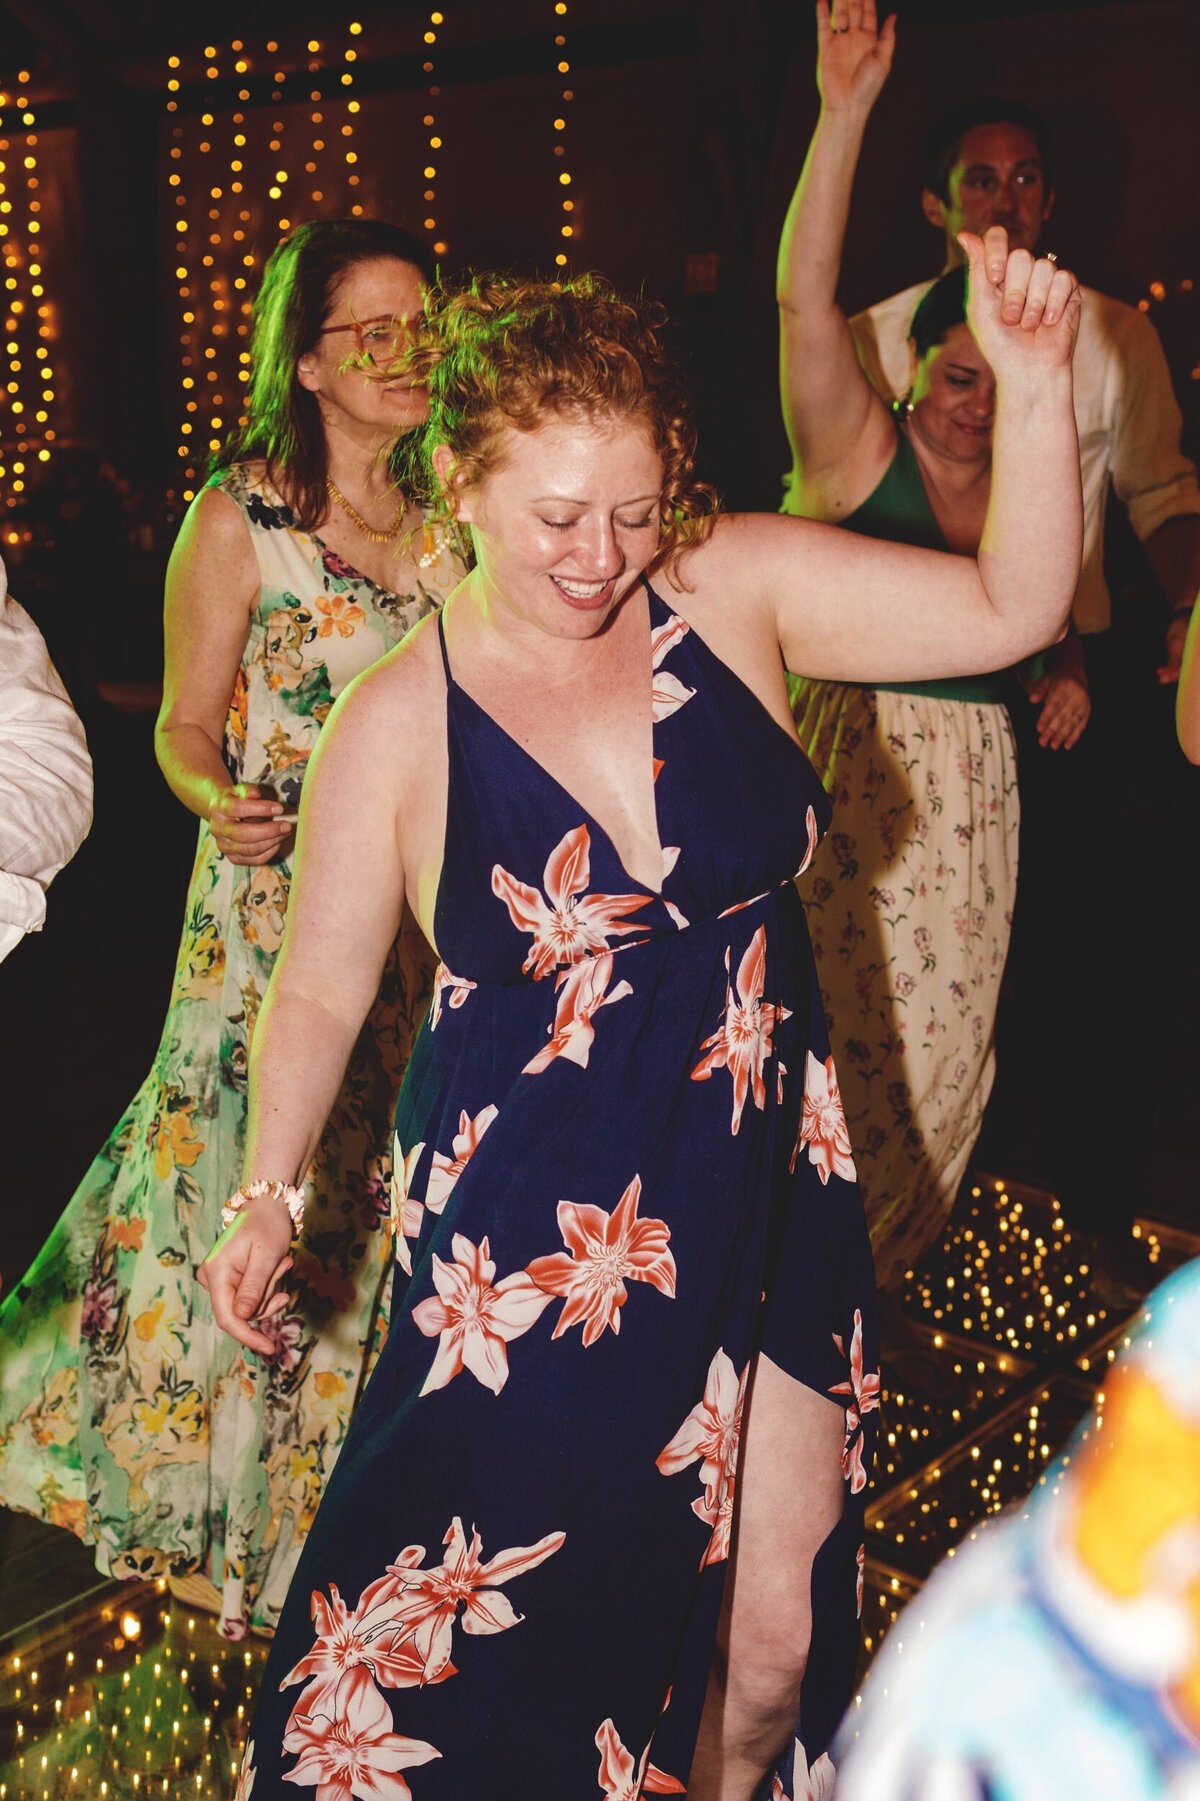 Guests dancing at wedding in Riviera Maya